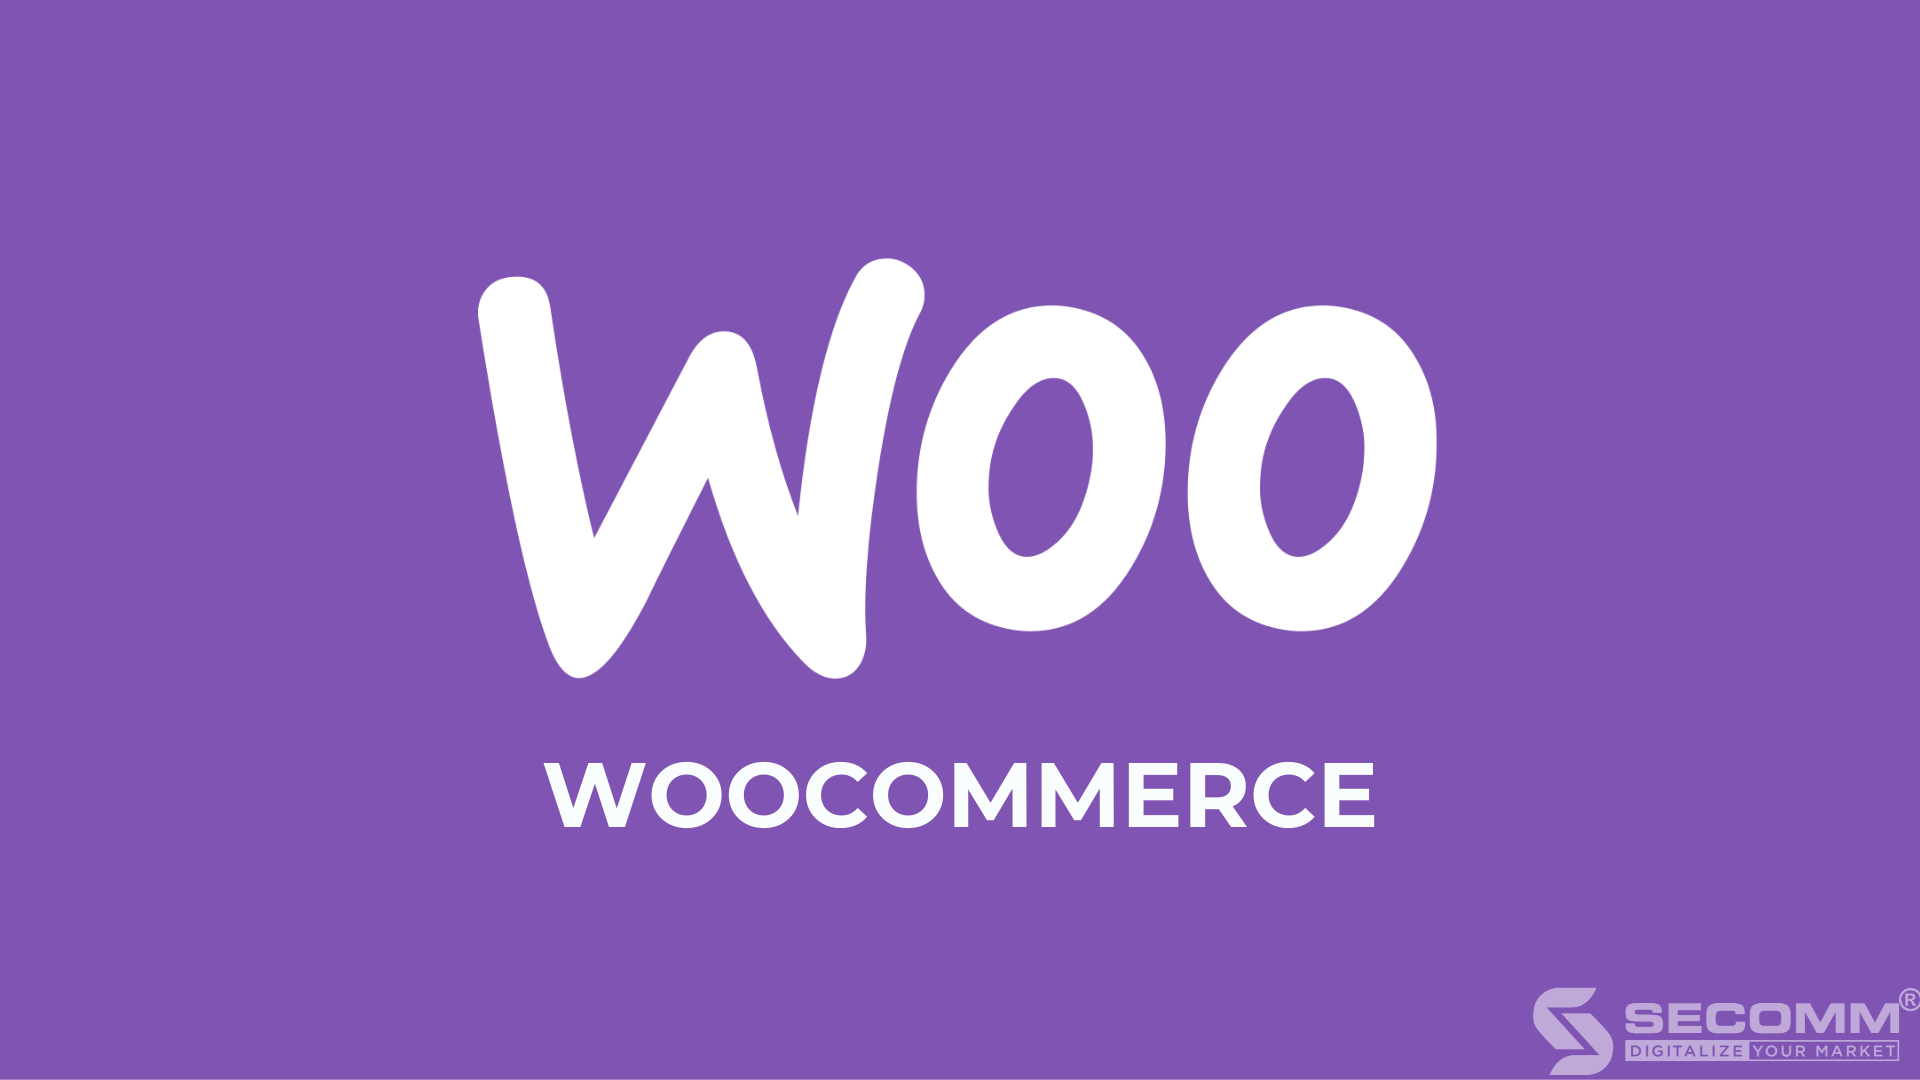 WooCommerce là một nền tảng thương mại điện tử mã nguồn mở, dưới dạng một plug-in của WordPress